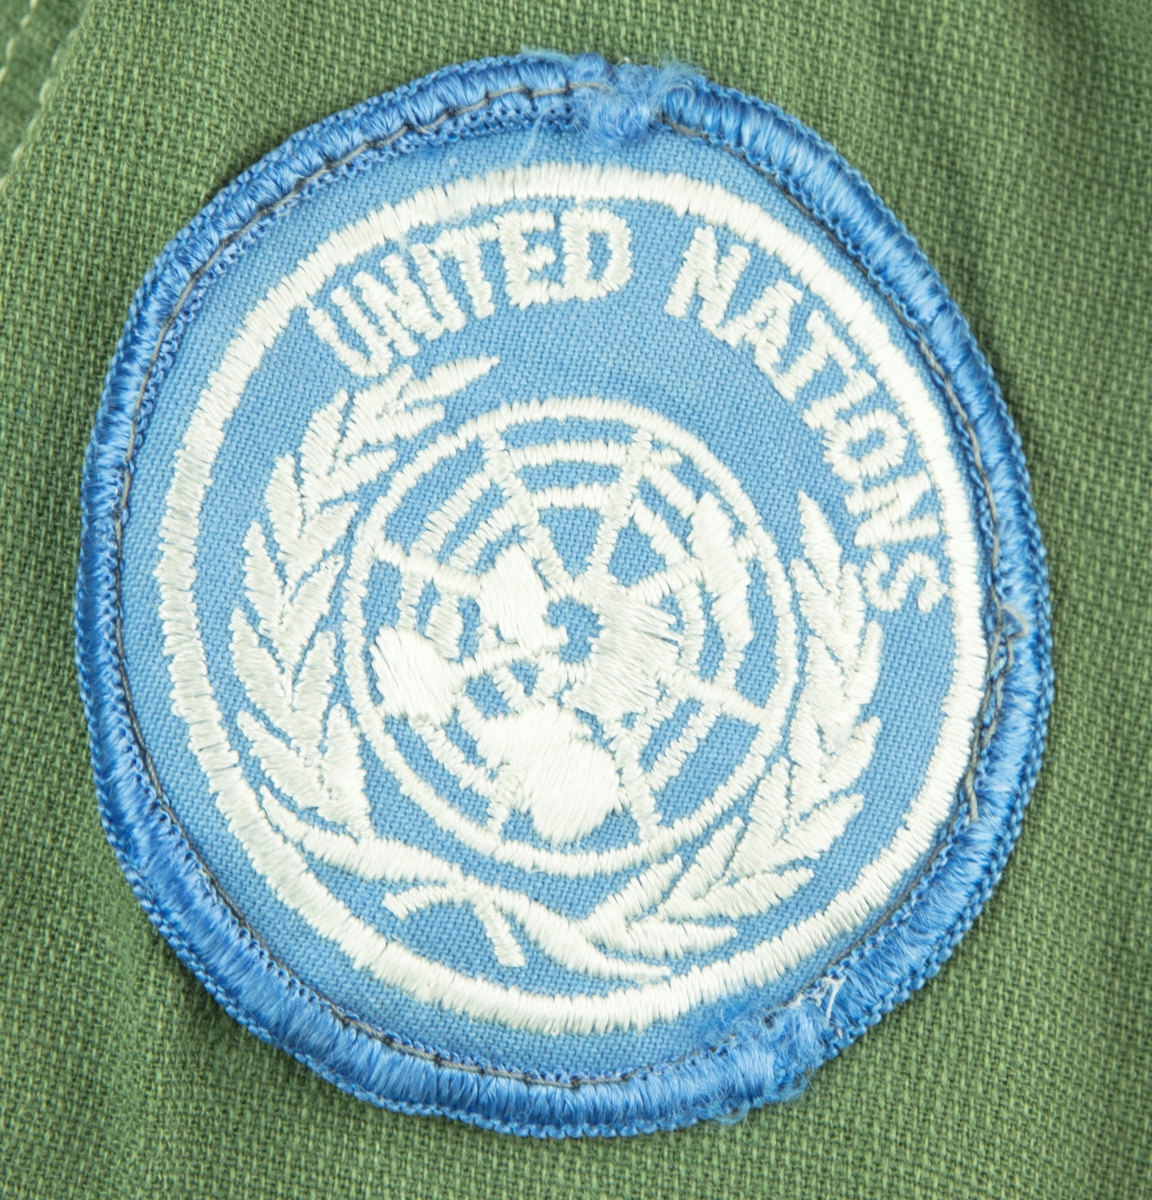 Skjorta i ljus militärgrön, brukad vid FN-tjänst. Två bröstfickor fram med knäppning. Knäppning fram med fyra knappar. Slejf på vardera axel för axelklaffhylsor. På vänster axel (framifrån) sitter ett ljusblått tygmärke med FN logga, på höger axel sitter ett tygmärke med Svensk vapensköld och texten "SWEDEN" i gult. Storlek XL.